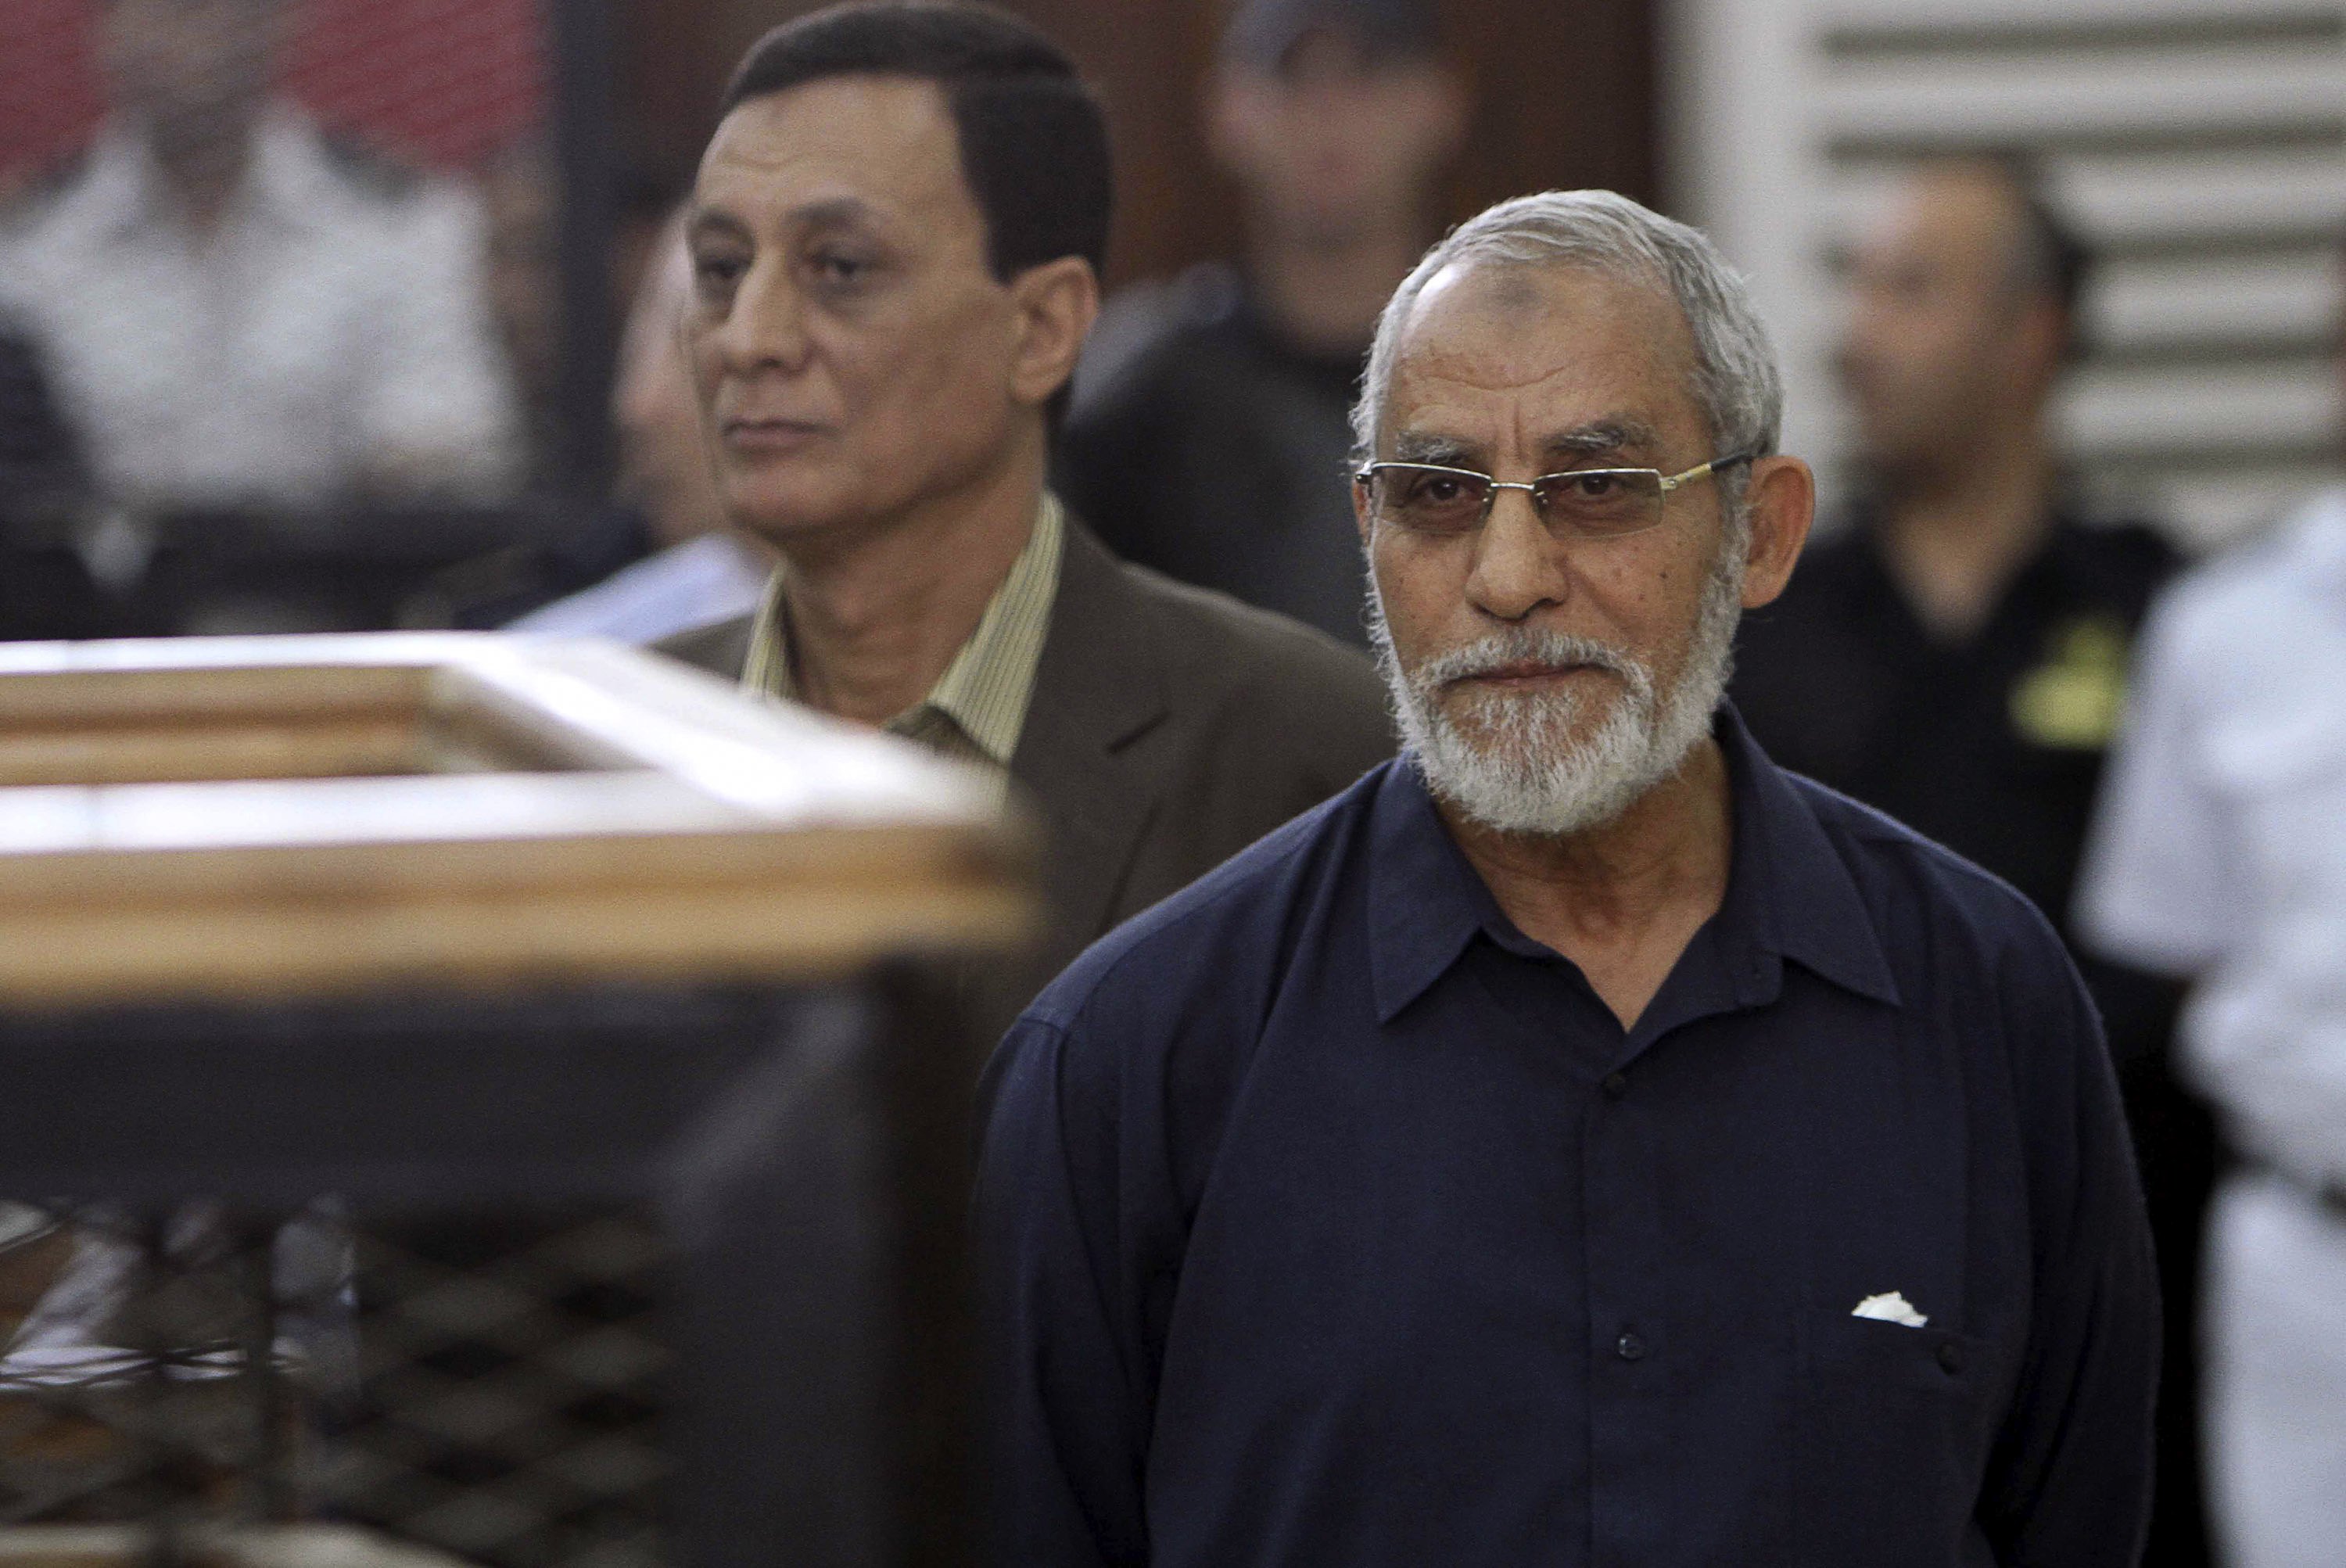 Brotherhood leaders' trial over inciting violence postponed